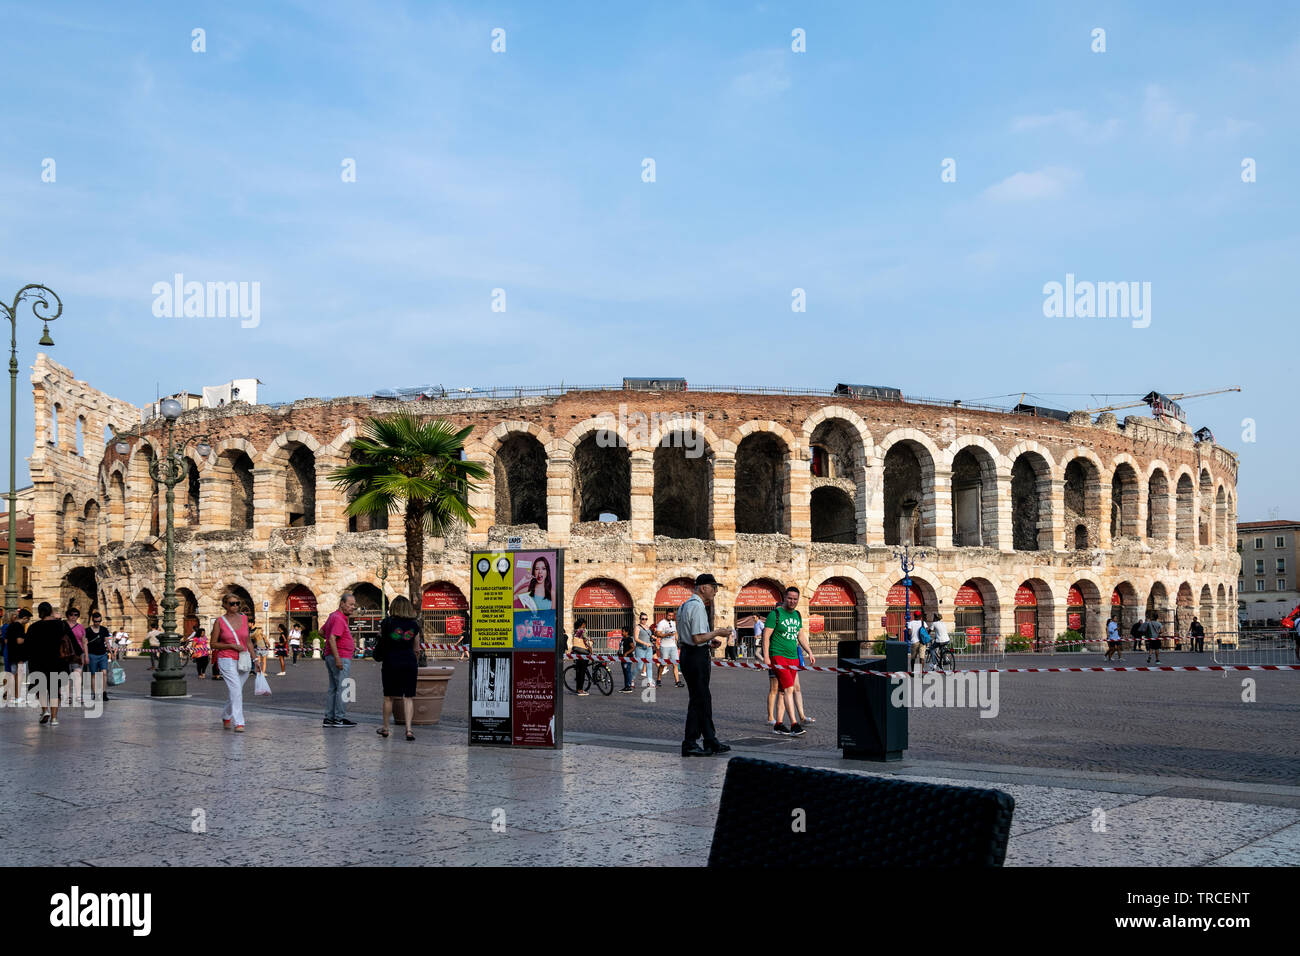 Una vista dell'Anfiteatro Romano in Piazza Bra, Verona, Italia Foto Stock